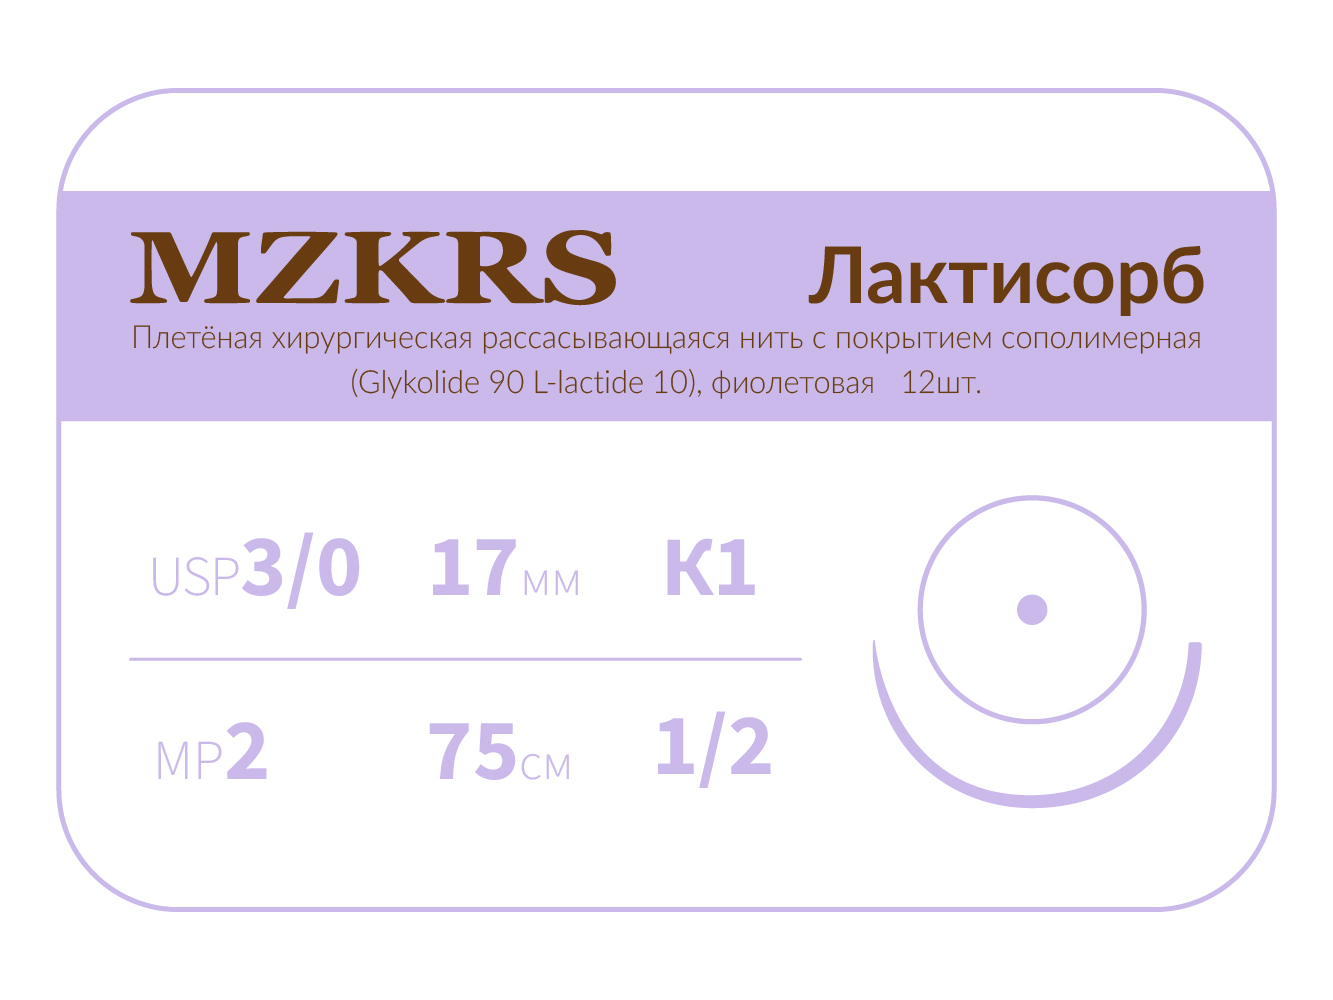 1712К1-Premium-3/0 (2)75 ПГЛ ЛАКТИСОРБ хирургическая нить сополимерная, MZKRS (Россия)